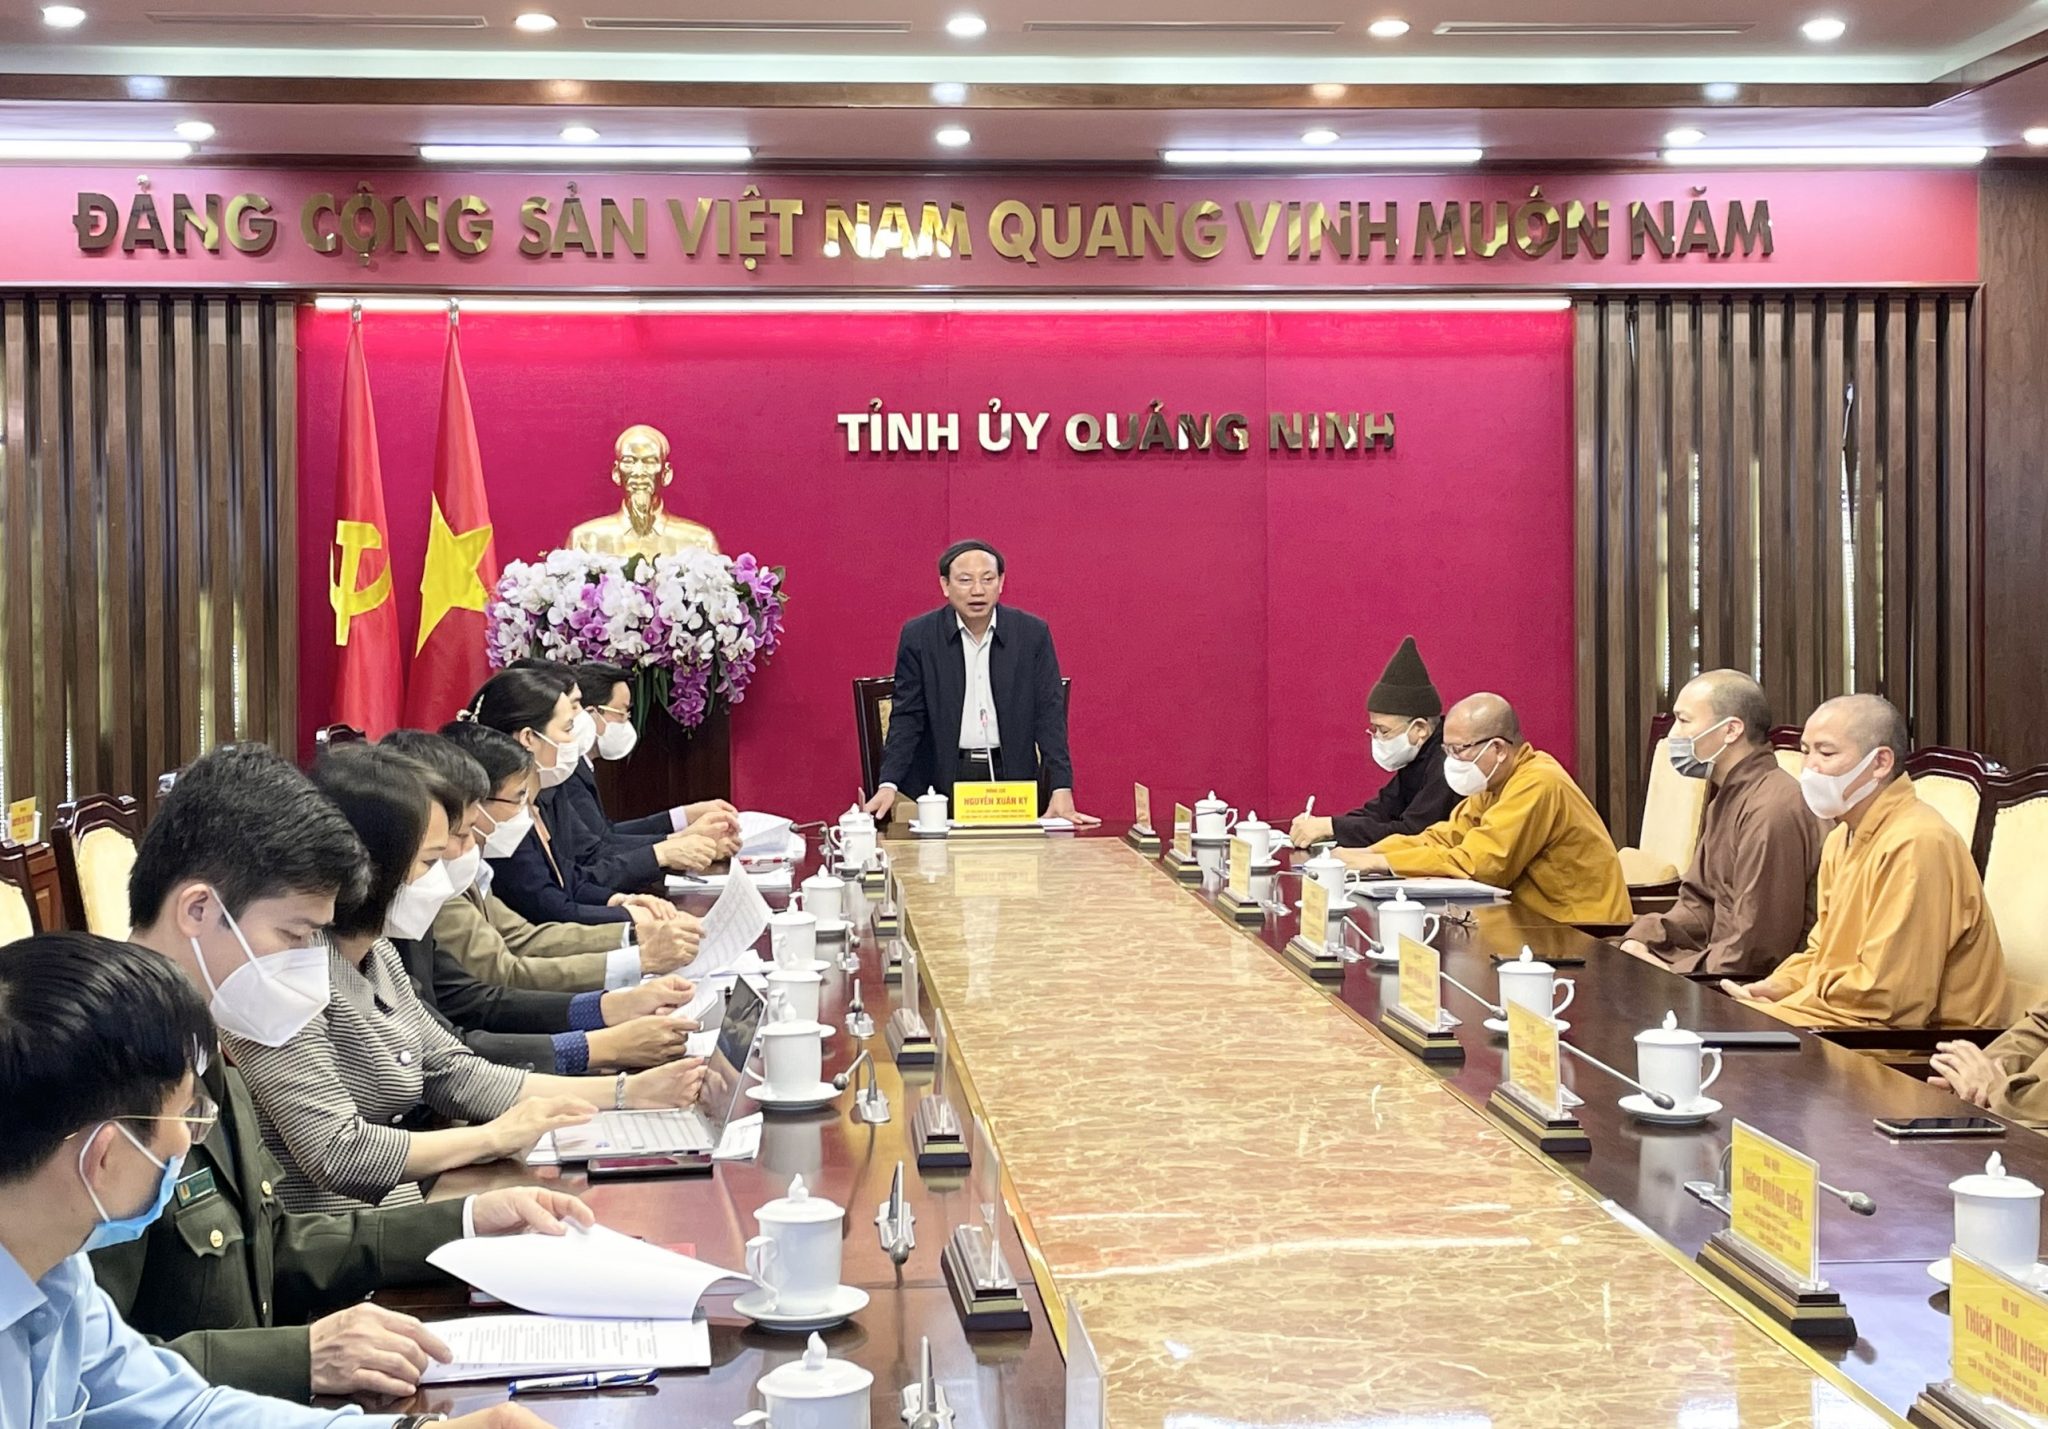 Bí thư tỉnh Quảng Ninh mong muốn và tin tưởng trong nhiệm kì tới Phật giáo tỉnh nhà tiếp tục khẳng định vị thế là kinh đô Phật giáo của nước Việt 